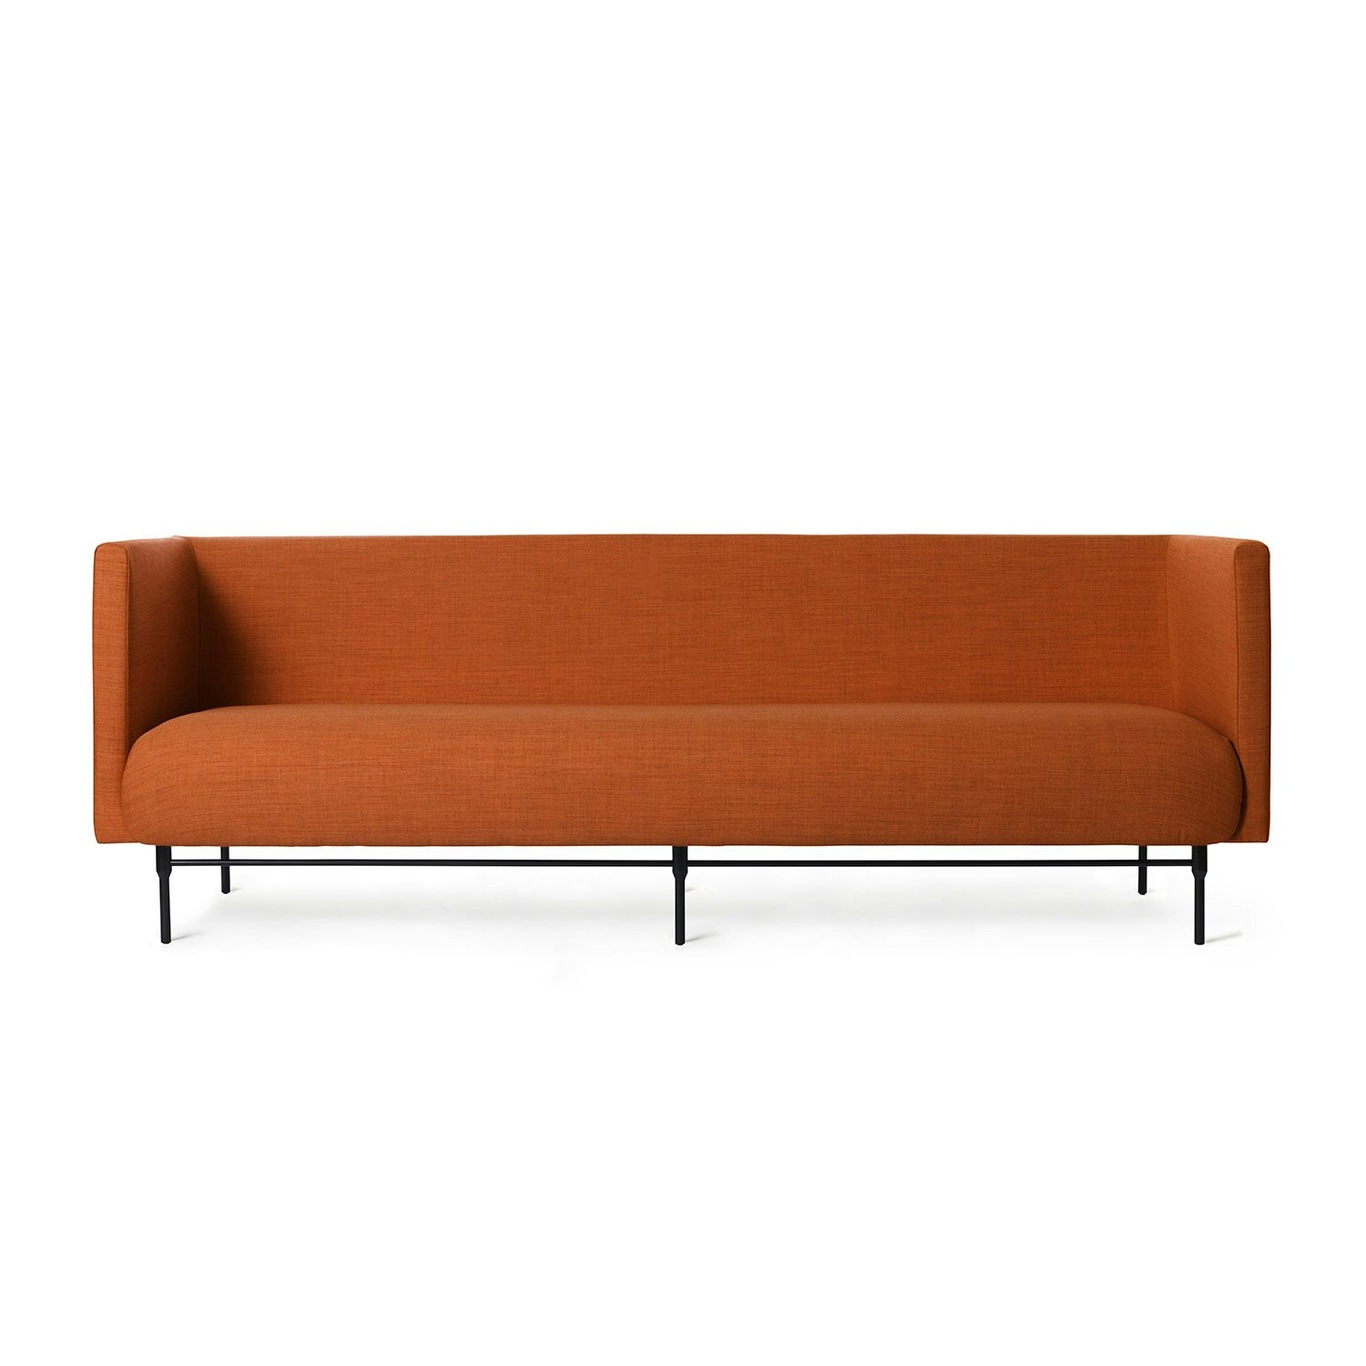 Galore 3-Seter Sofa, Burnt orange